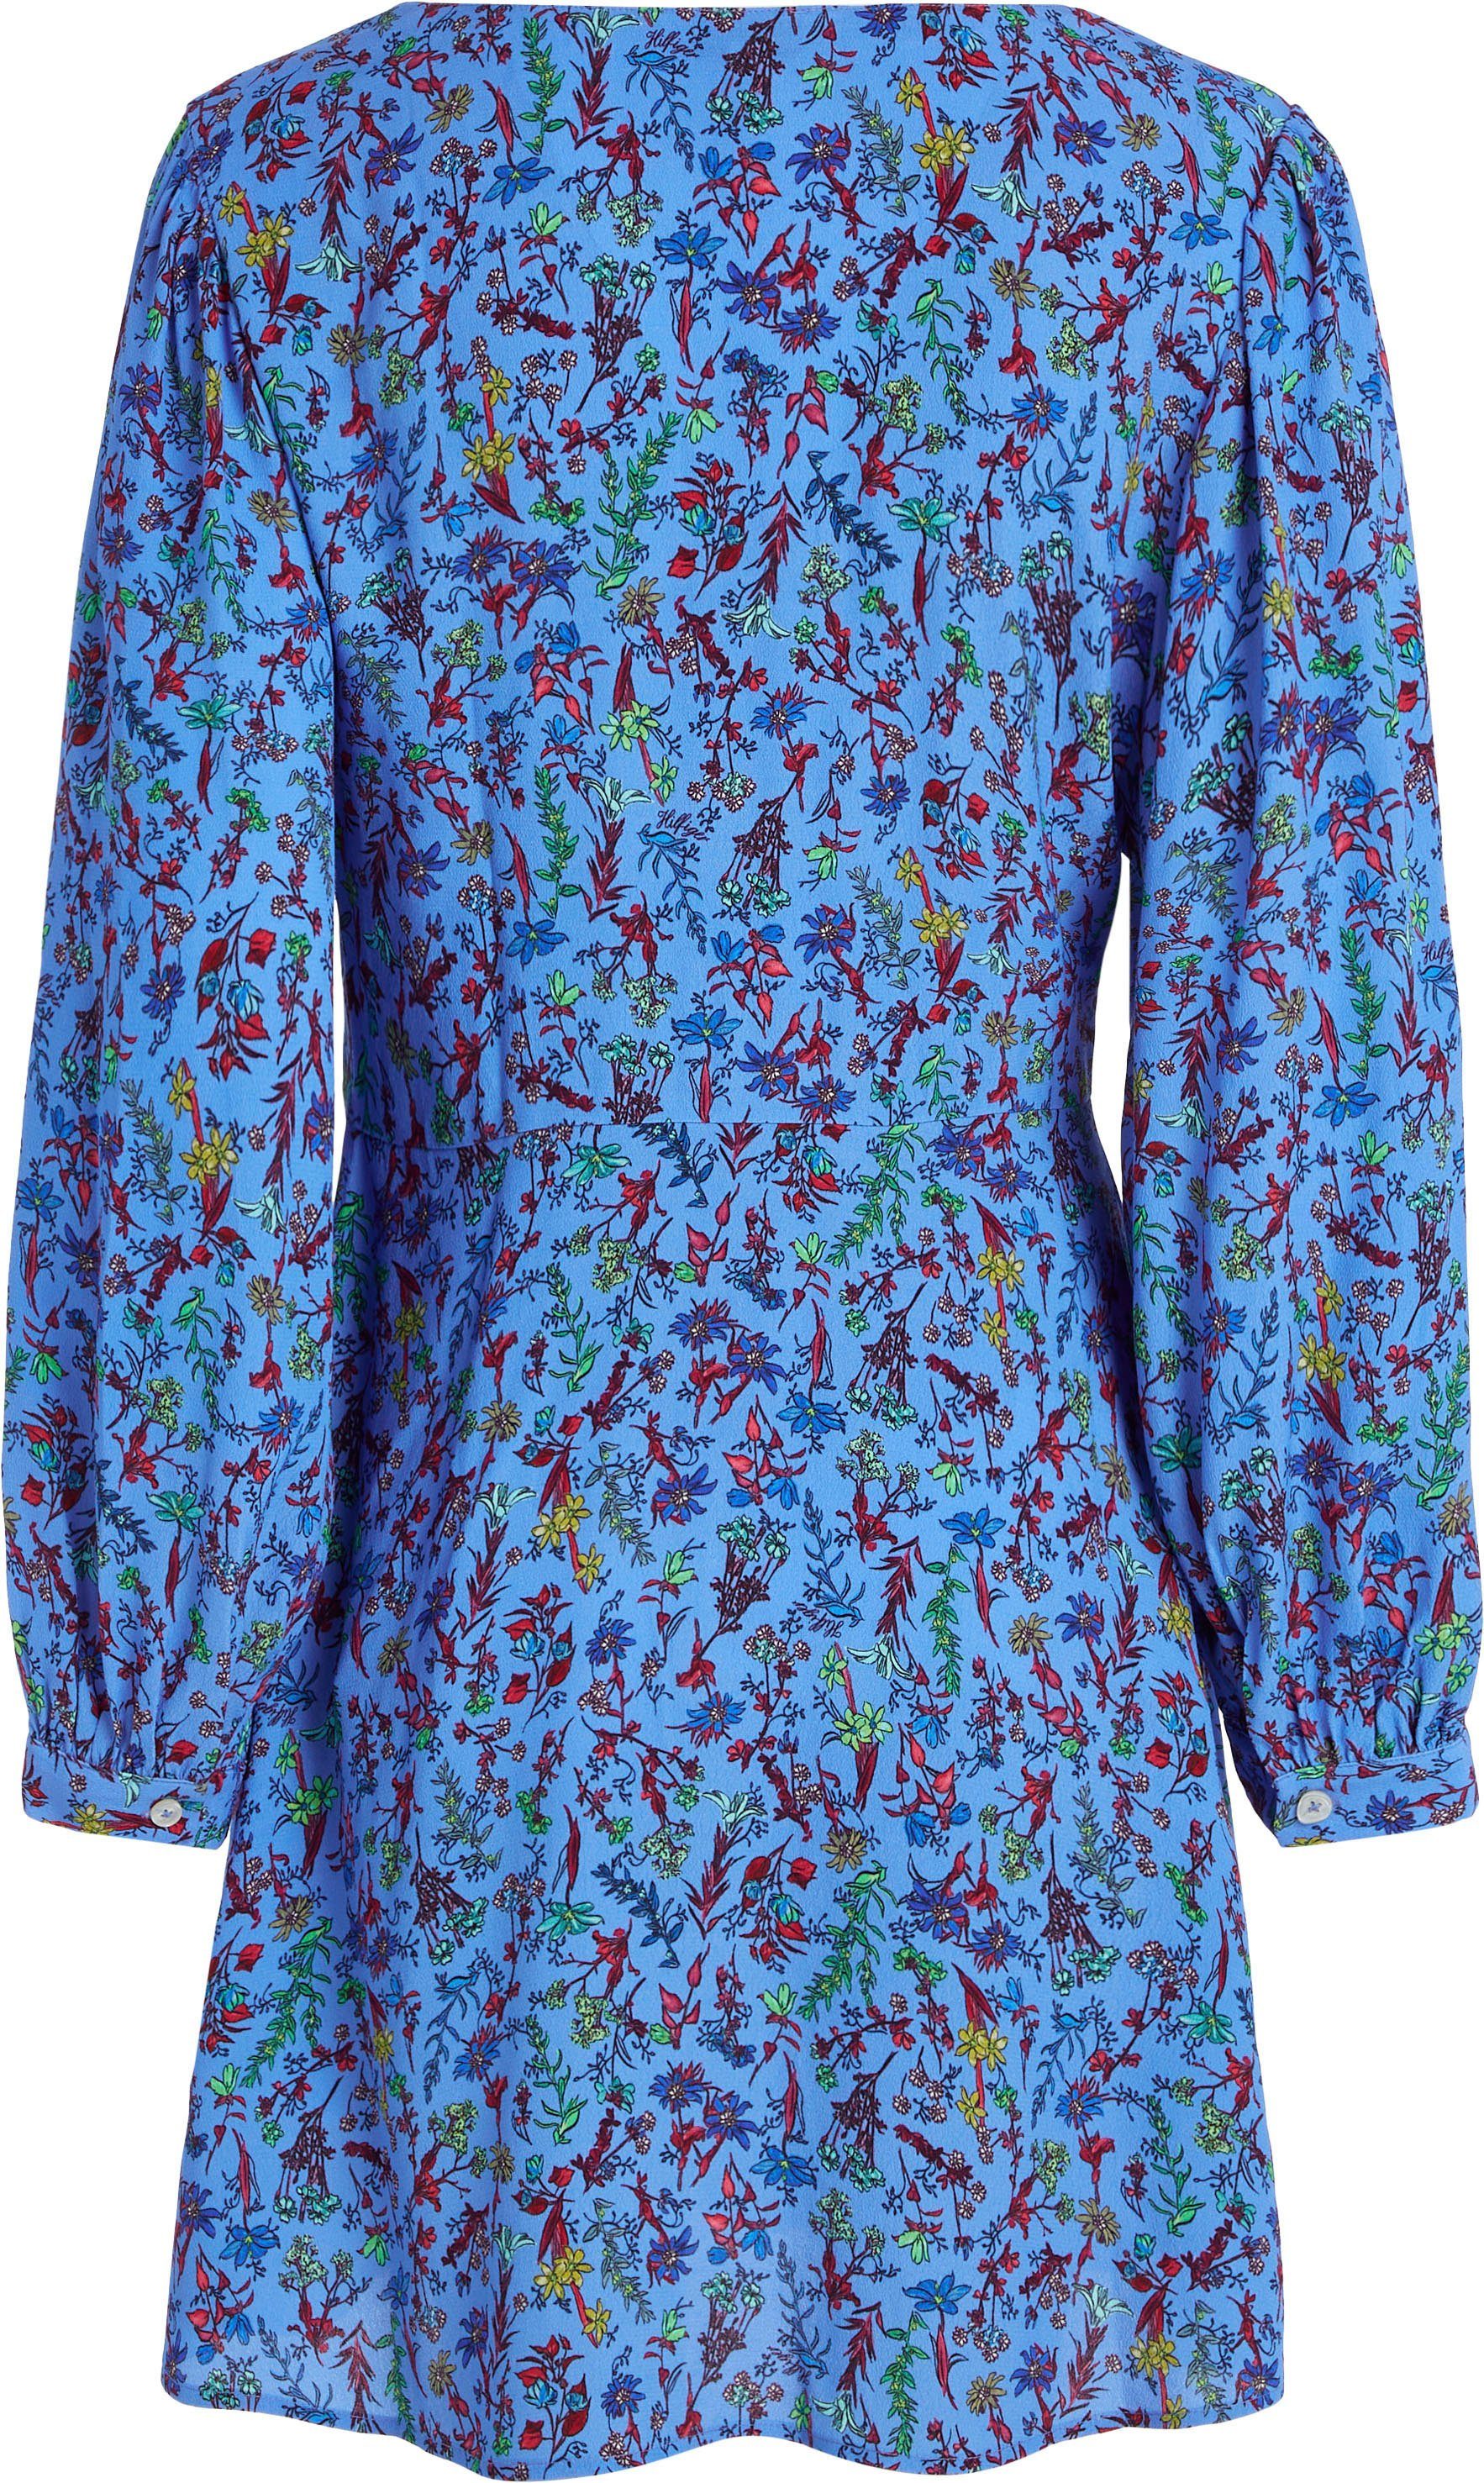 LS Hilfiger SHORT DRESS in FLORAL farbenfrohem Tommy VIS Floral-Print Shirtkleid